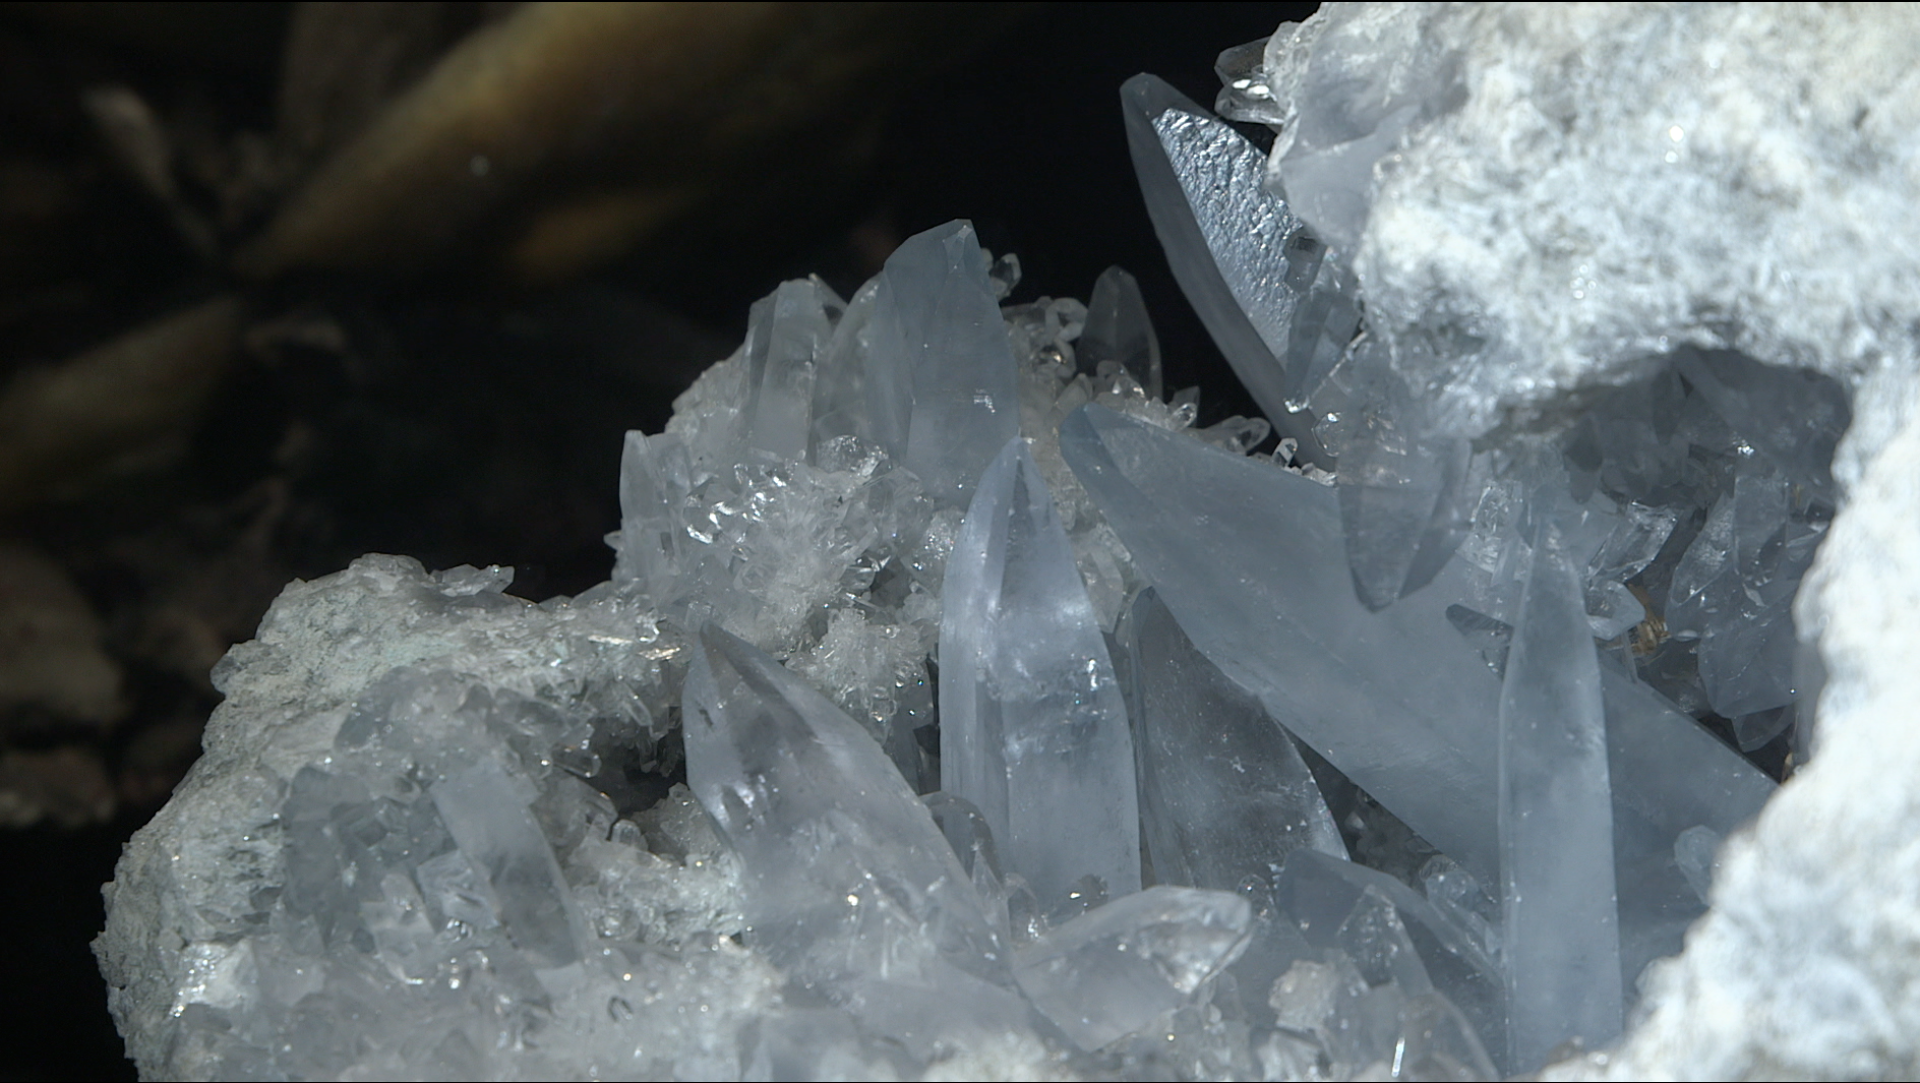 Visuel extrait du film "Le cristal, un solide à facettes"